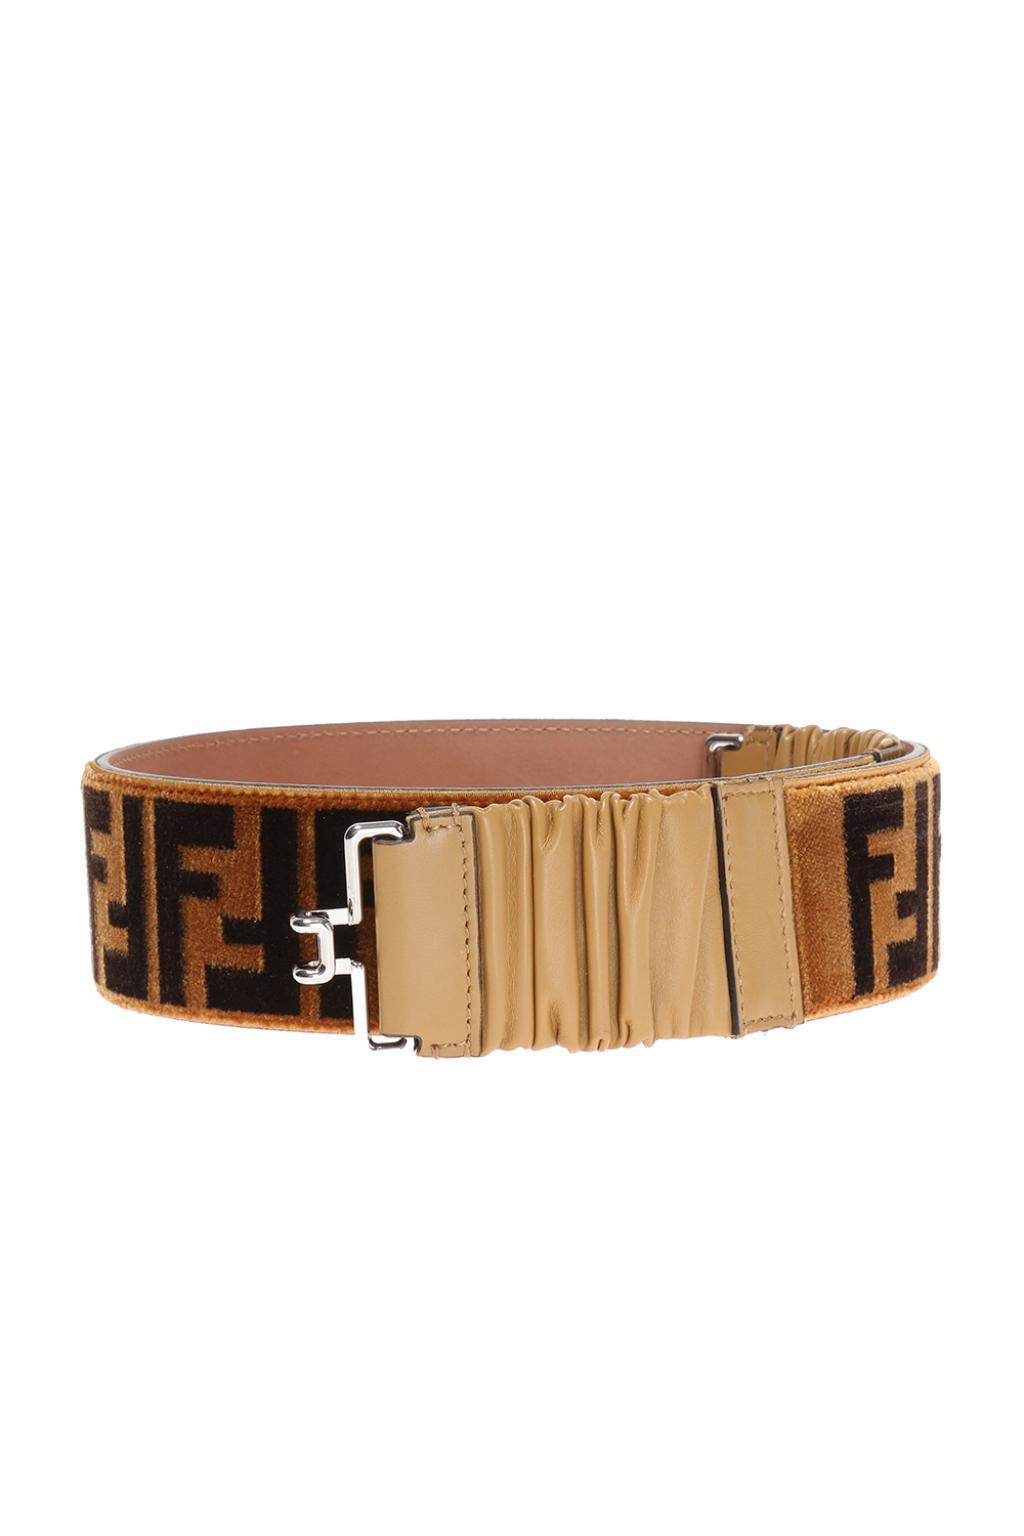 Fendi Leather Logo Belt in Brown - Lyst